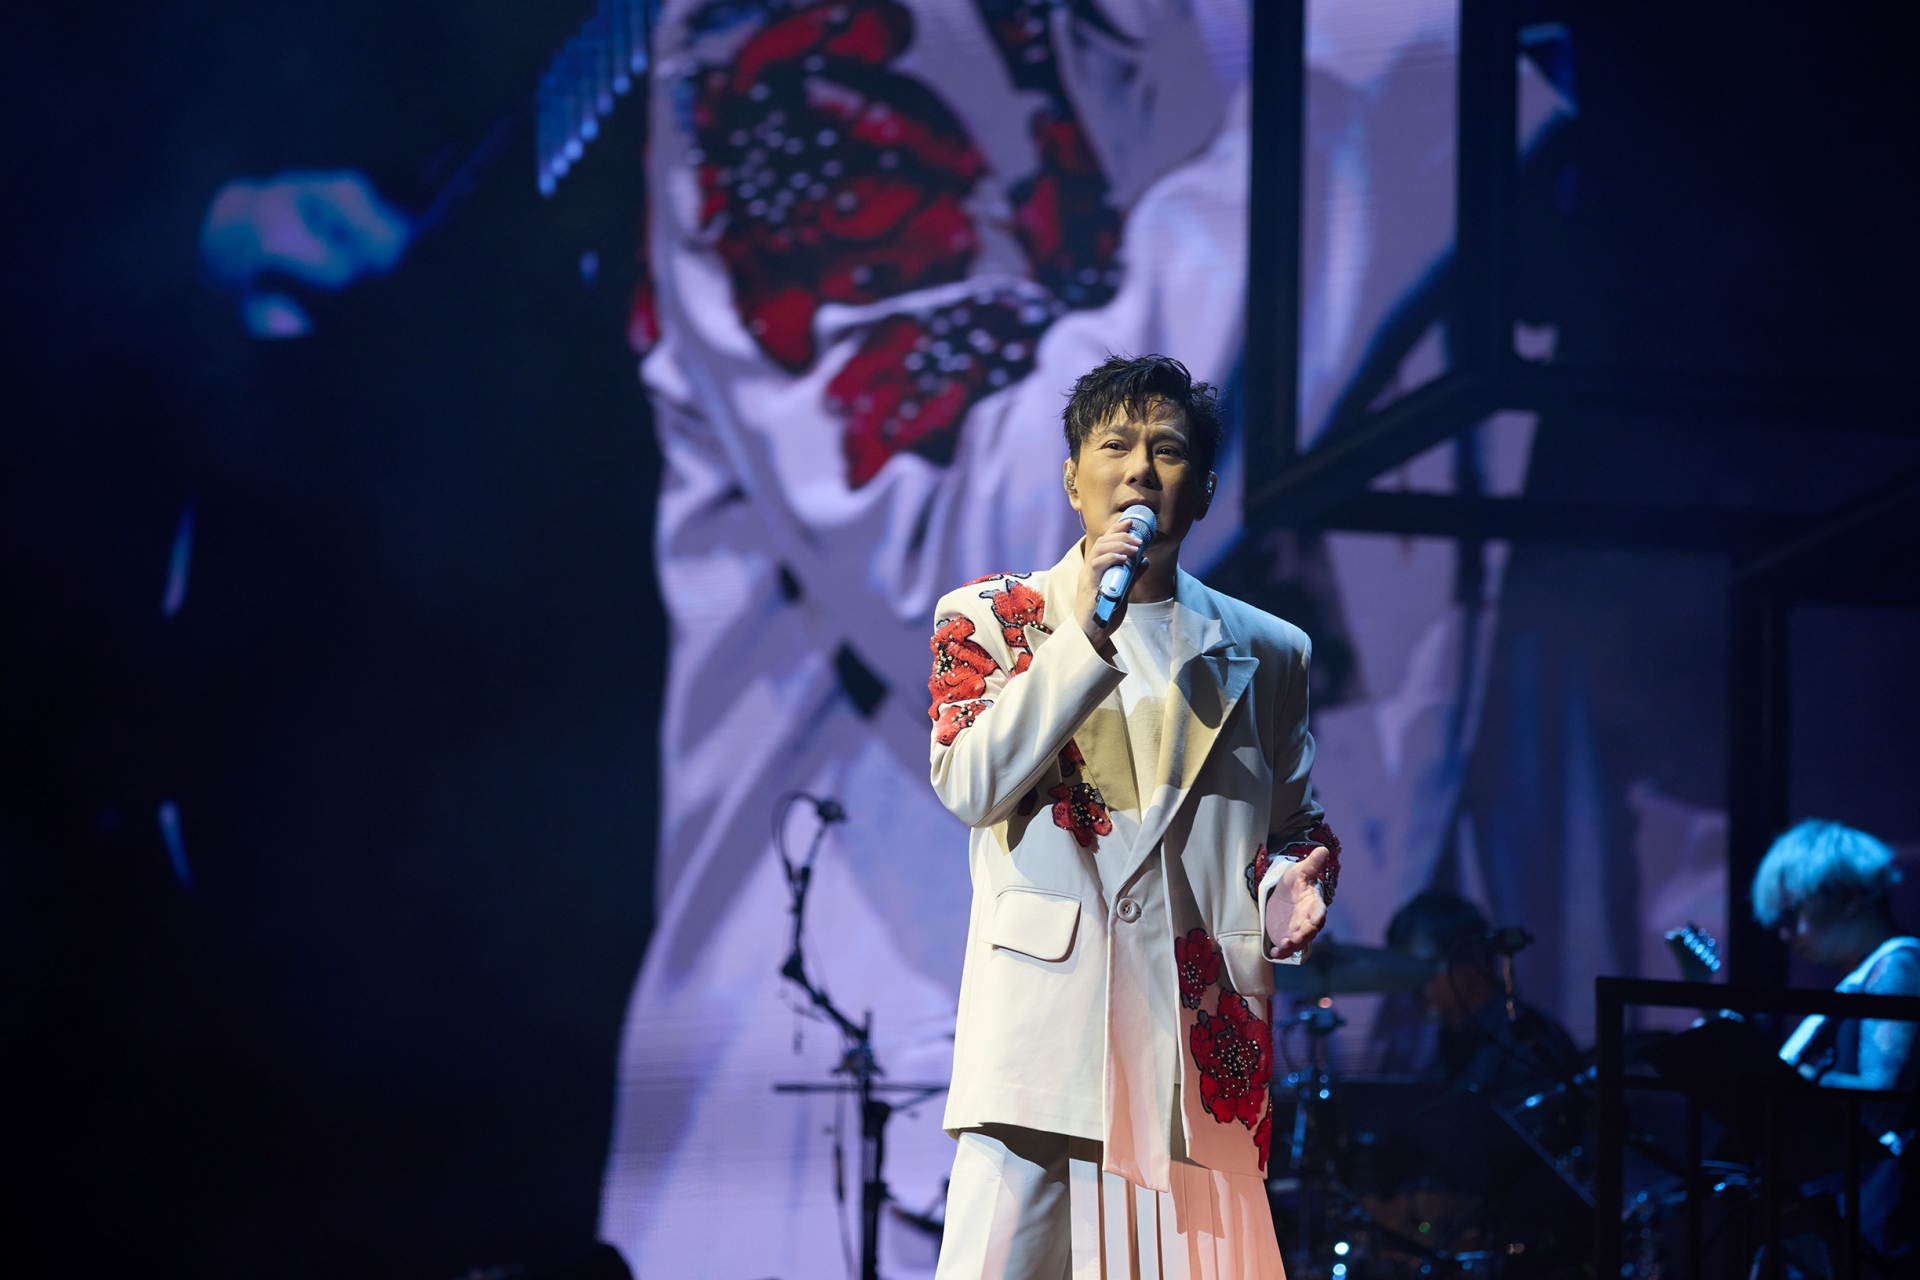 張信哲昨（9日）在杜拜舉辦個人演唱會，是華人歌手第一位在杜拜舉辦演唱會，也獲得官方頒發文化交流大使頭銜。圖/潮水音樂提供